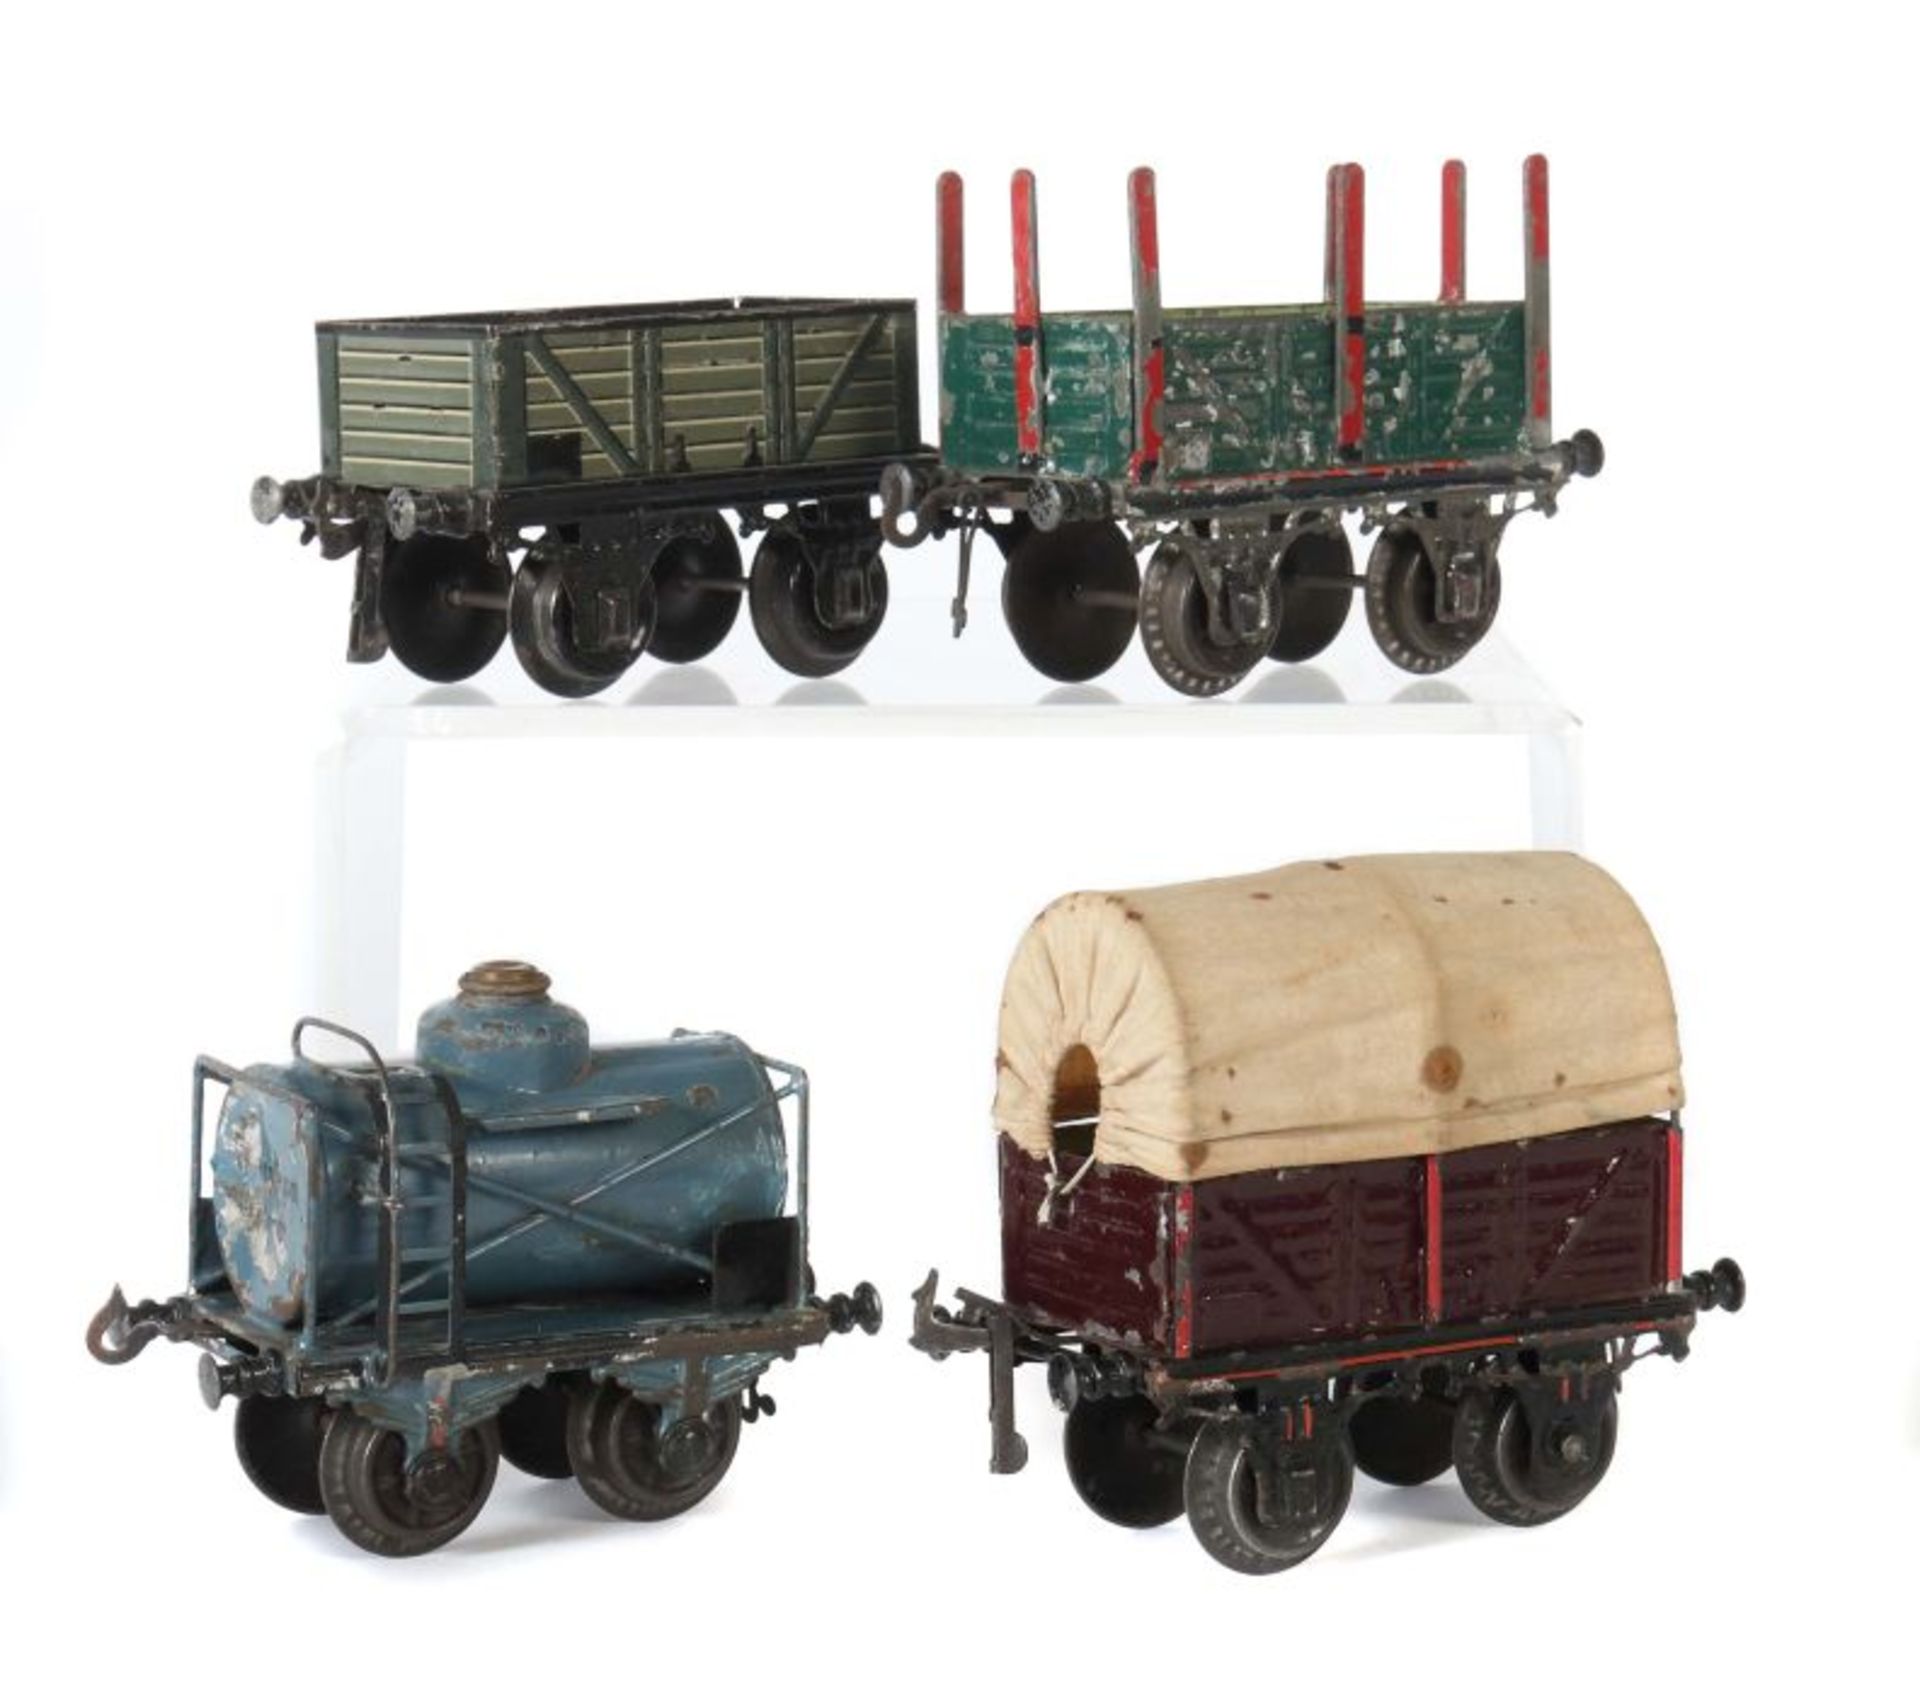 4 Güterwagen Bing, Spur 1, 1 x 10/512 offener Güterwagen, Lattenoptik, grün/hellgrün, BZ 1907-1932,